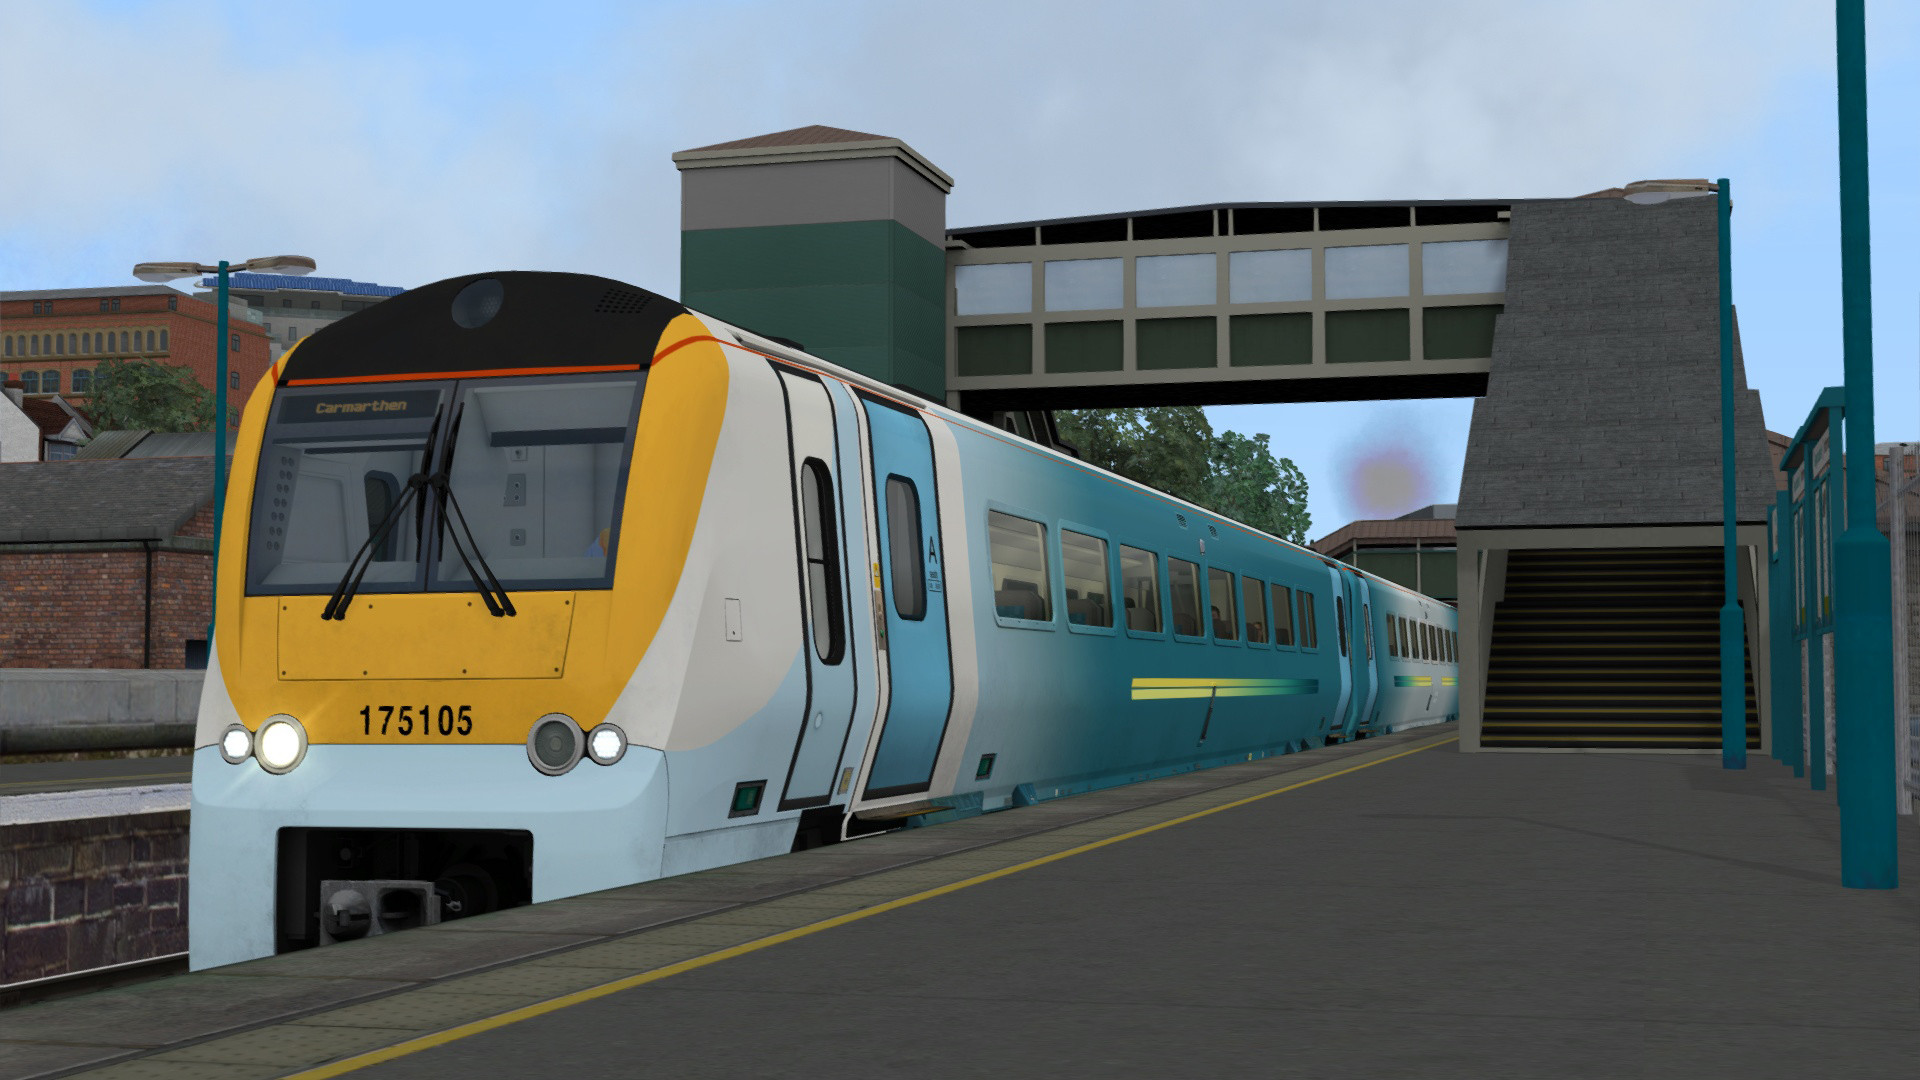 Train Simulator - South Wales Coastal: Bristol - Swansea Route Add-on DLC Steam CD Key USD 4.17